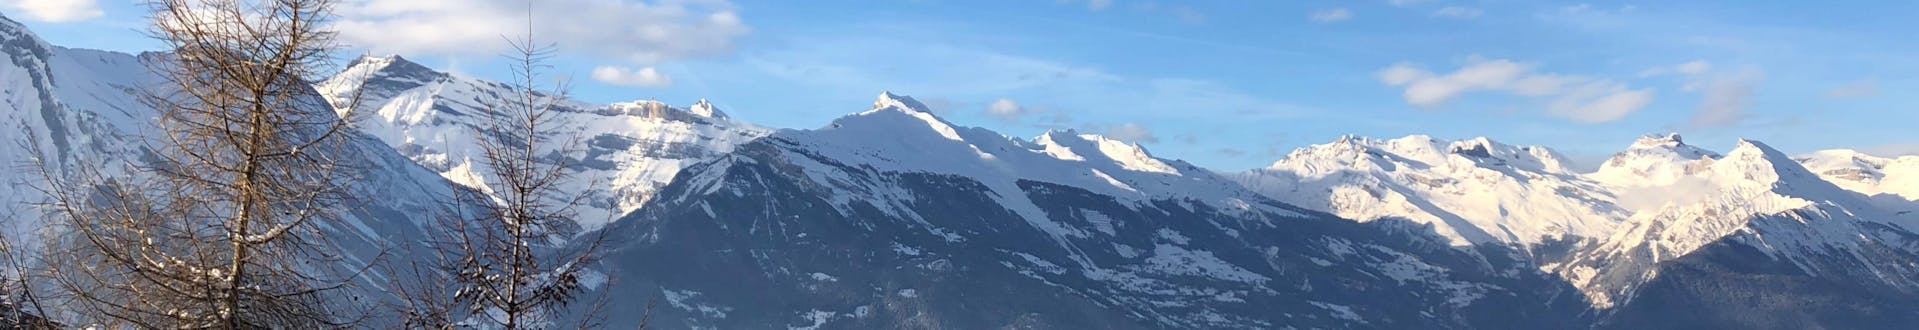 Une vue aérienne de la station de ski de Nendaz-Siviez, une destination populaire en Suisse romande, où les visiteurs peuvent réserver des cours de ski avec une des écoles de ski locales.